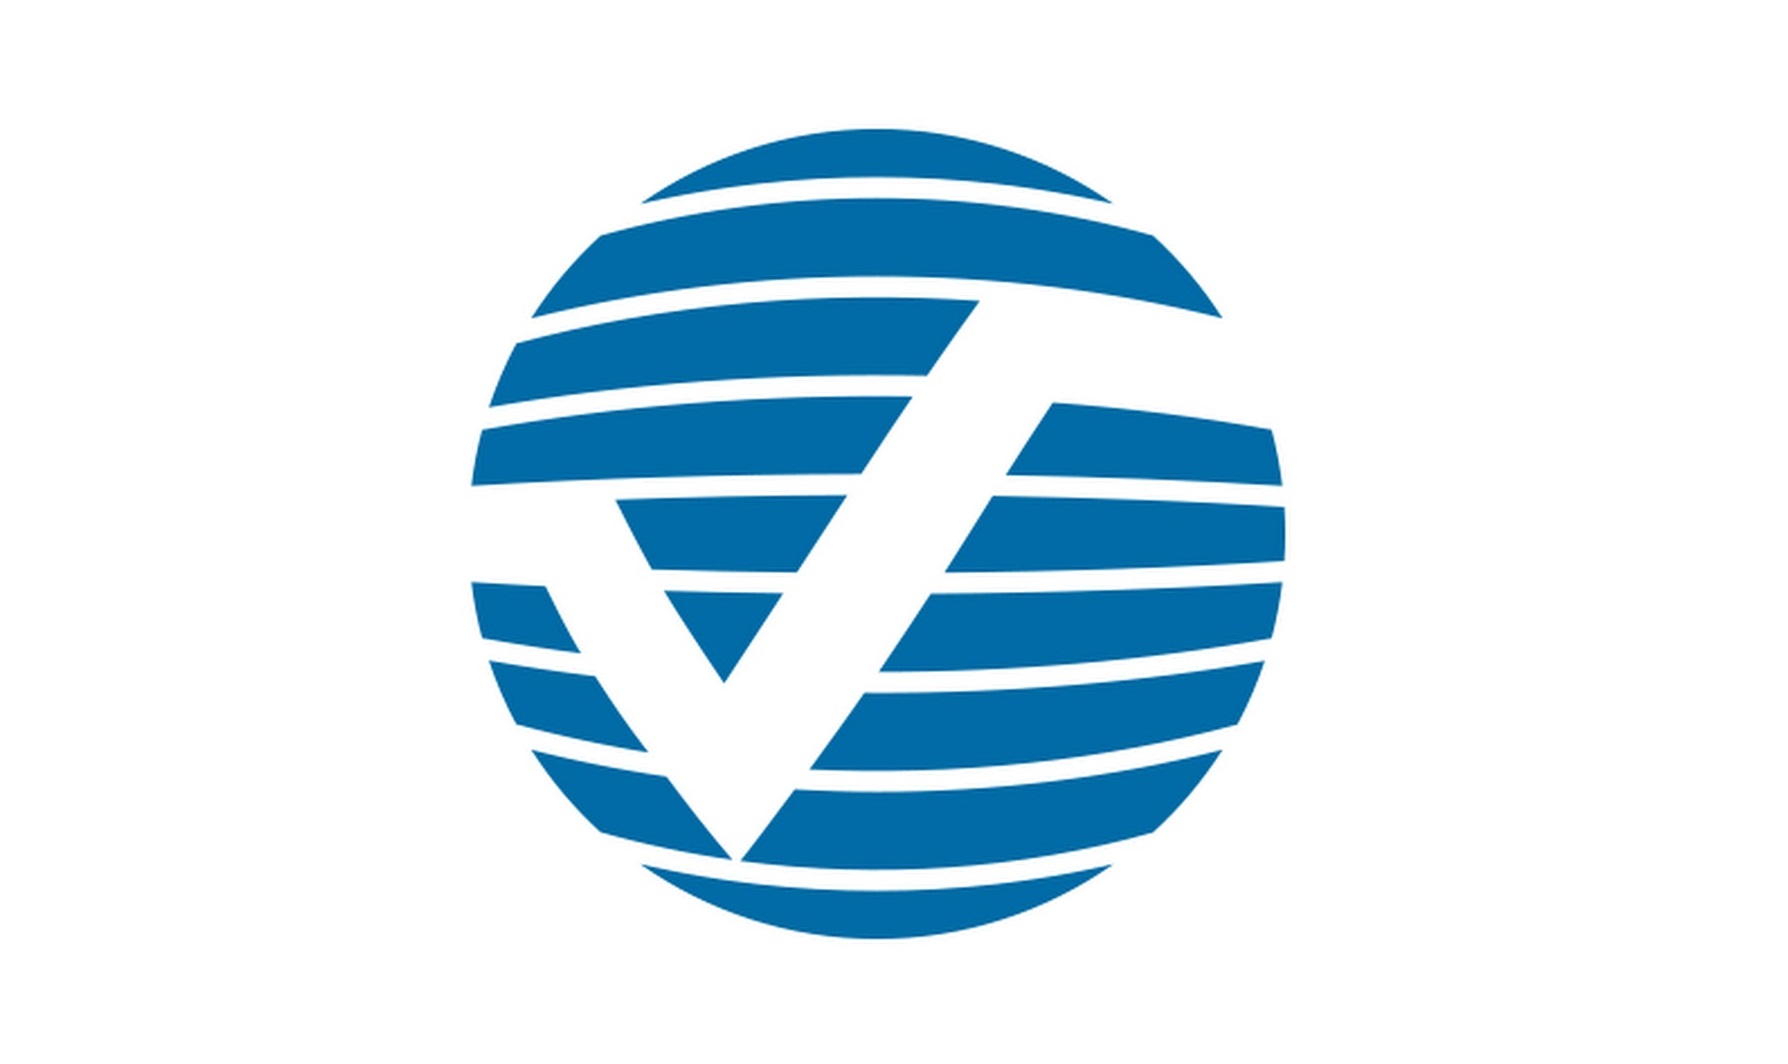 Verisk launches Life Risk Navigator software platform